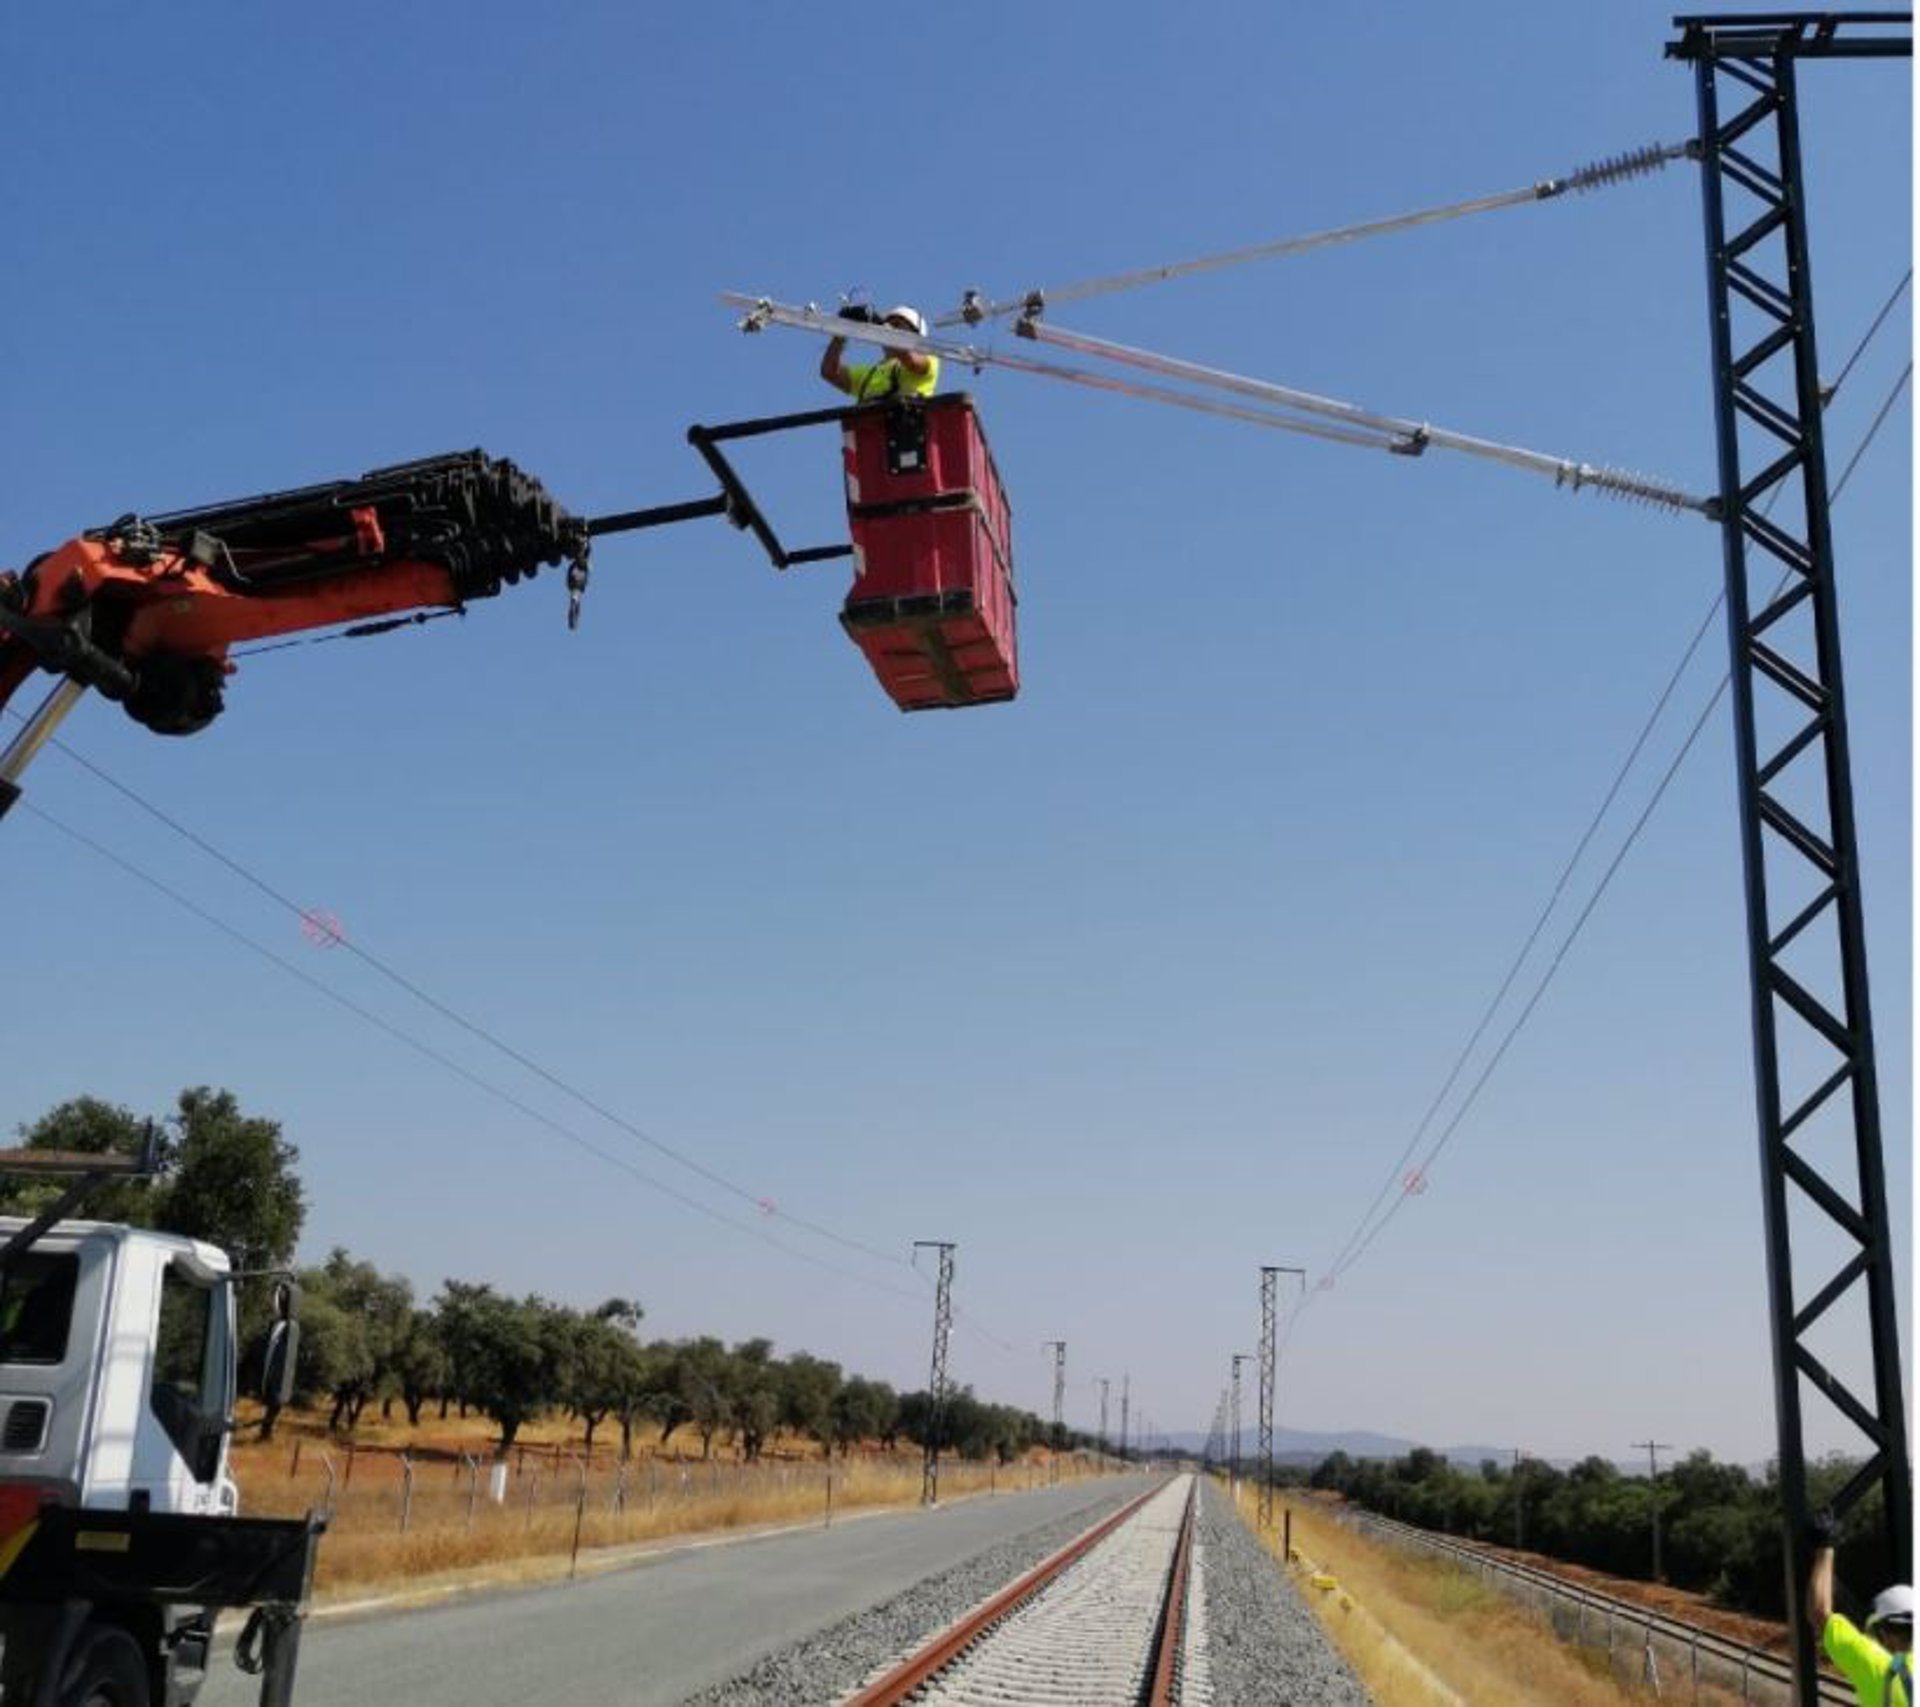 26/12/2020 Trabajos de electrificación de la alta velocidad Madrid-Extremadura.
ECONOMIA ESPAÑA EUROPA EXTREMADURA
ADIF